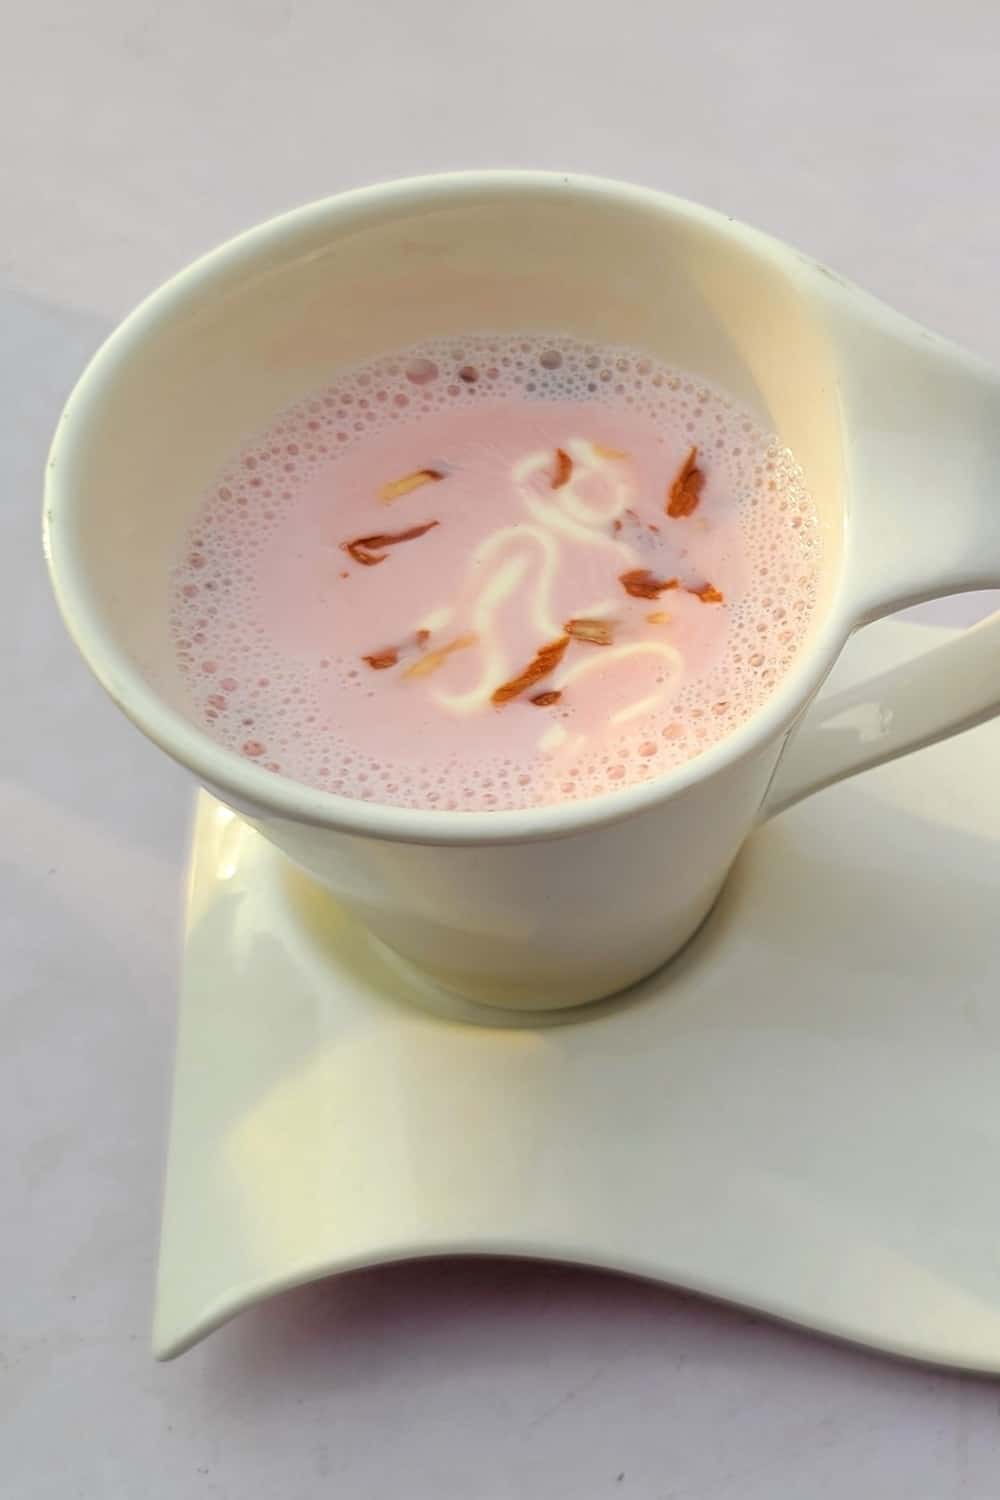 Kasmiri chai also known as a noon tea